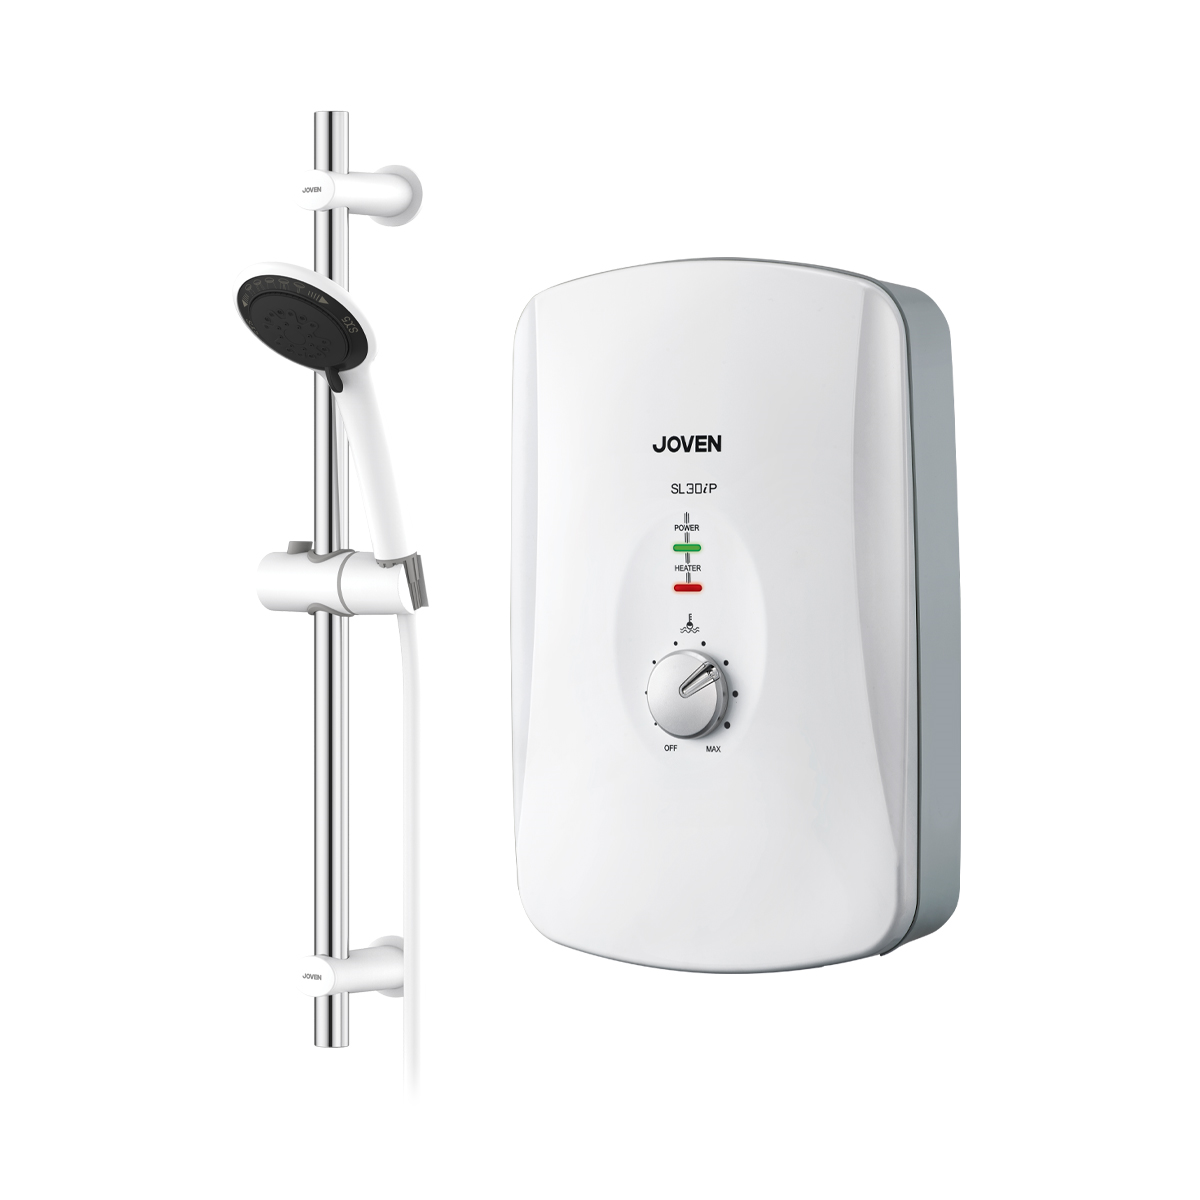 JOVEN - SL30iP Handshower DC Pump Instant Water Heater (White)